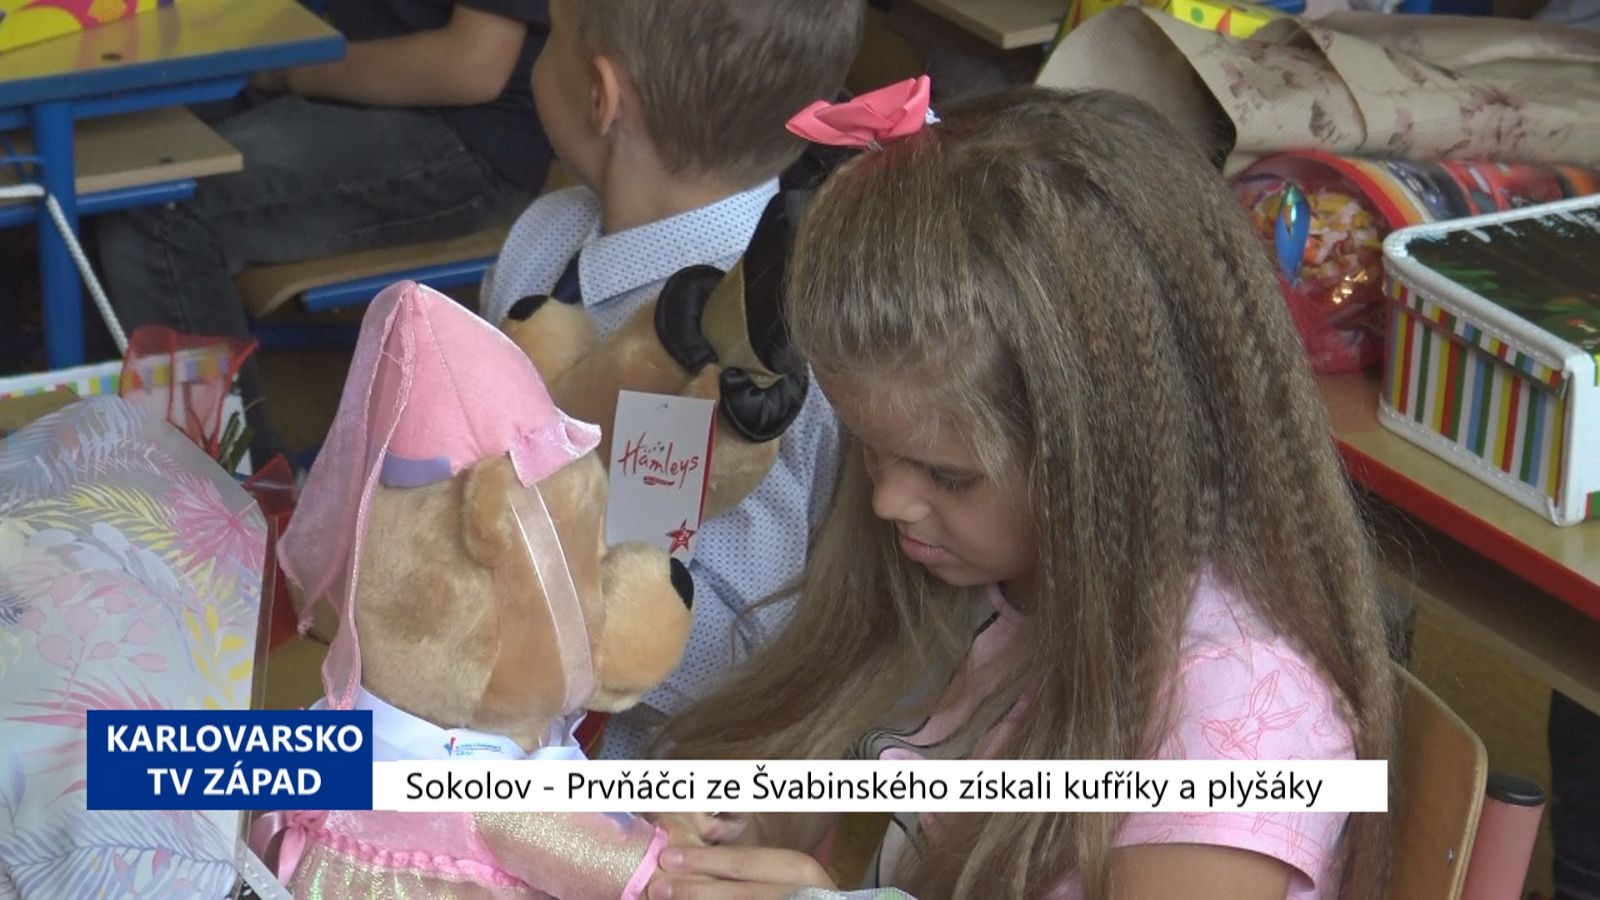 Sokolov: Prvňáčci ze Švabinského získali kufříky a plyšáky (TV Západ)